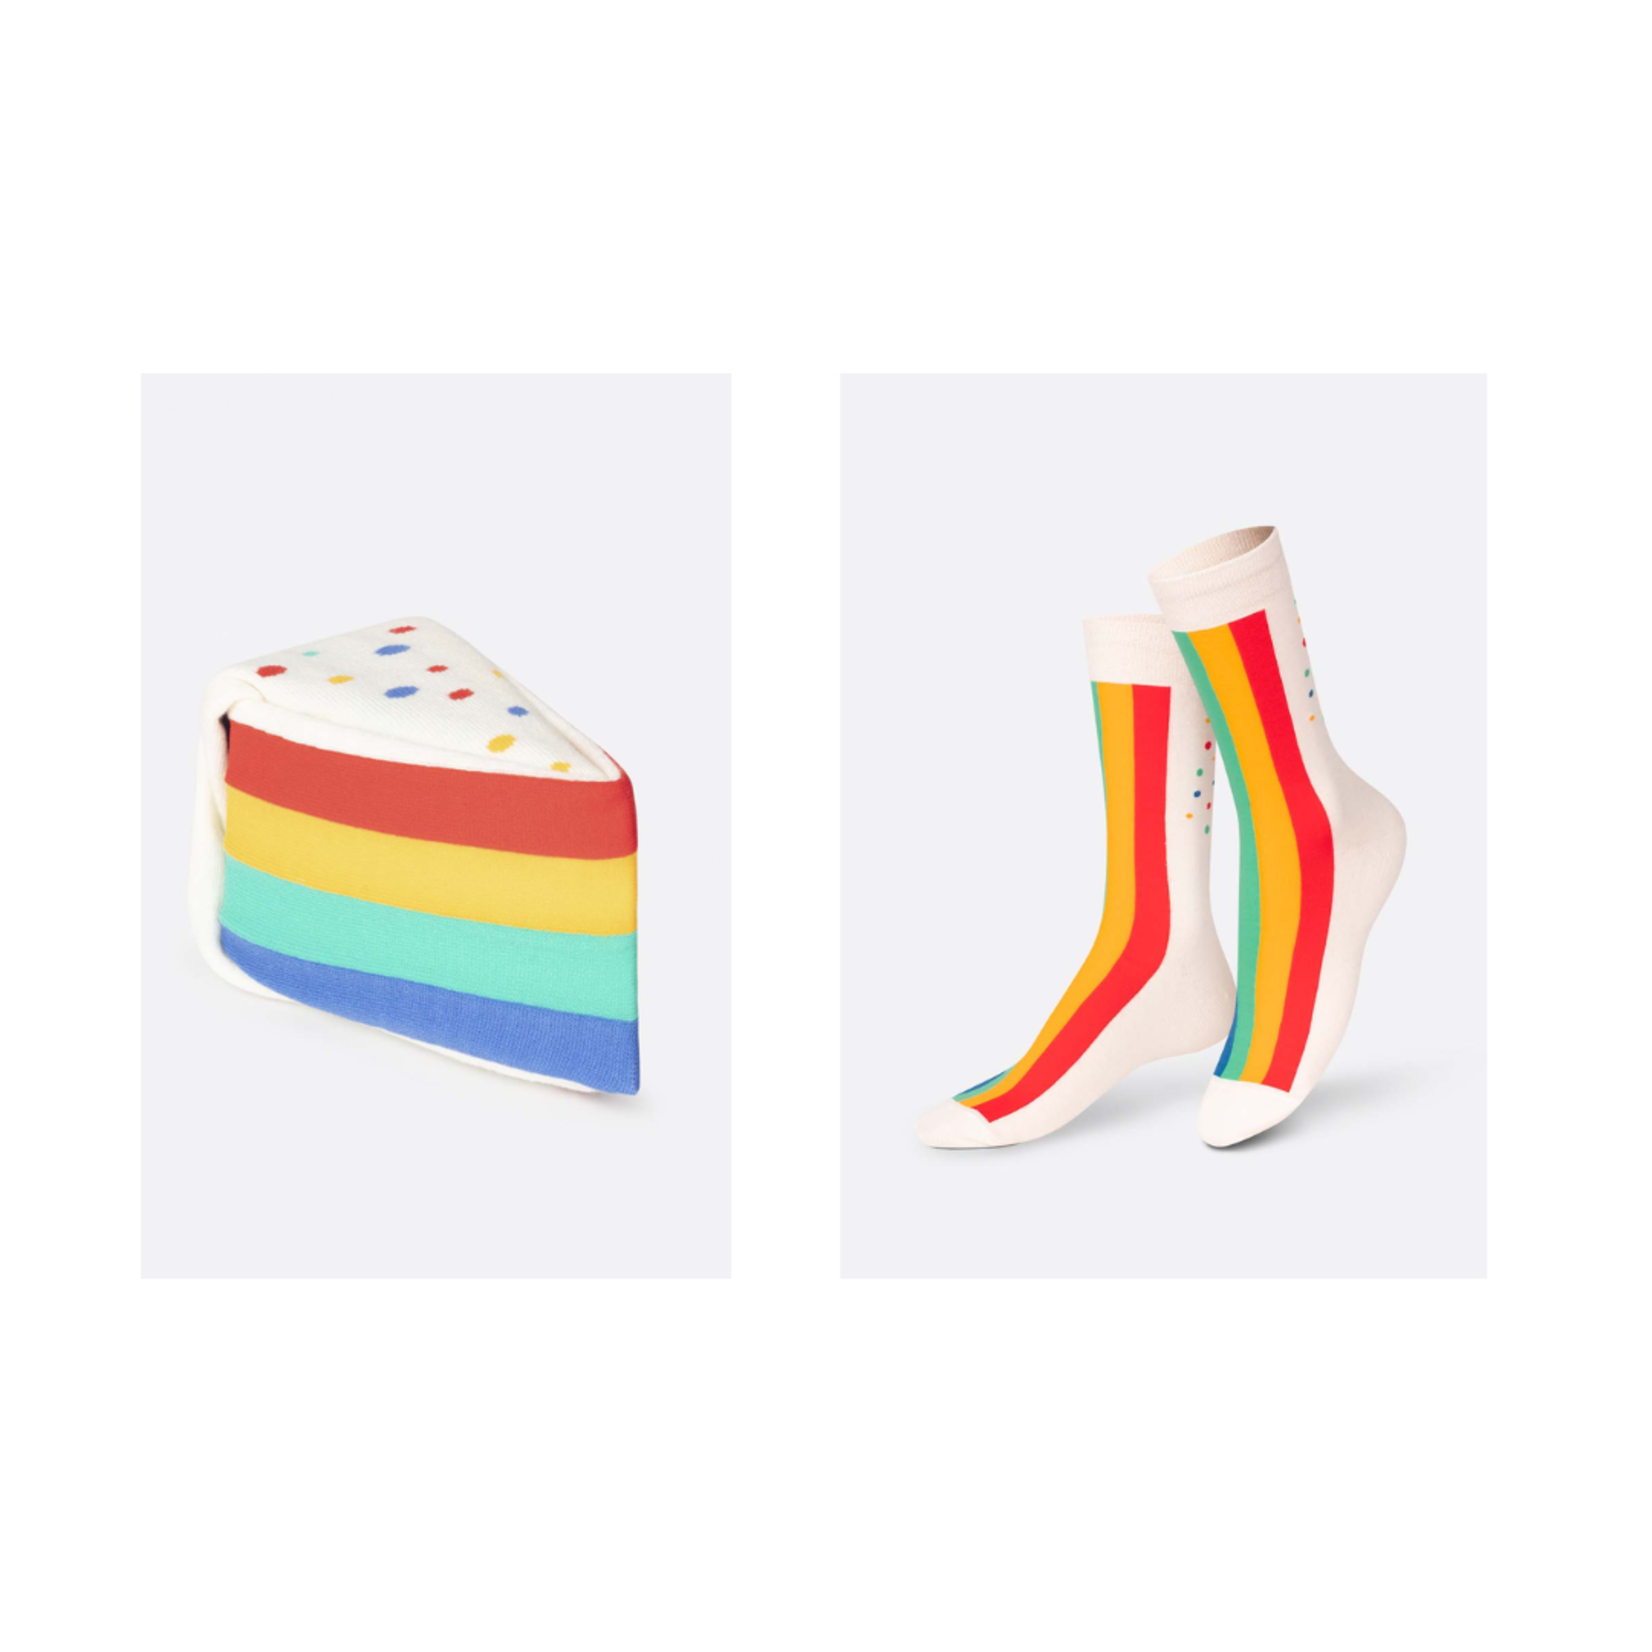 Eat My Socks - Rainbow Cake